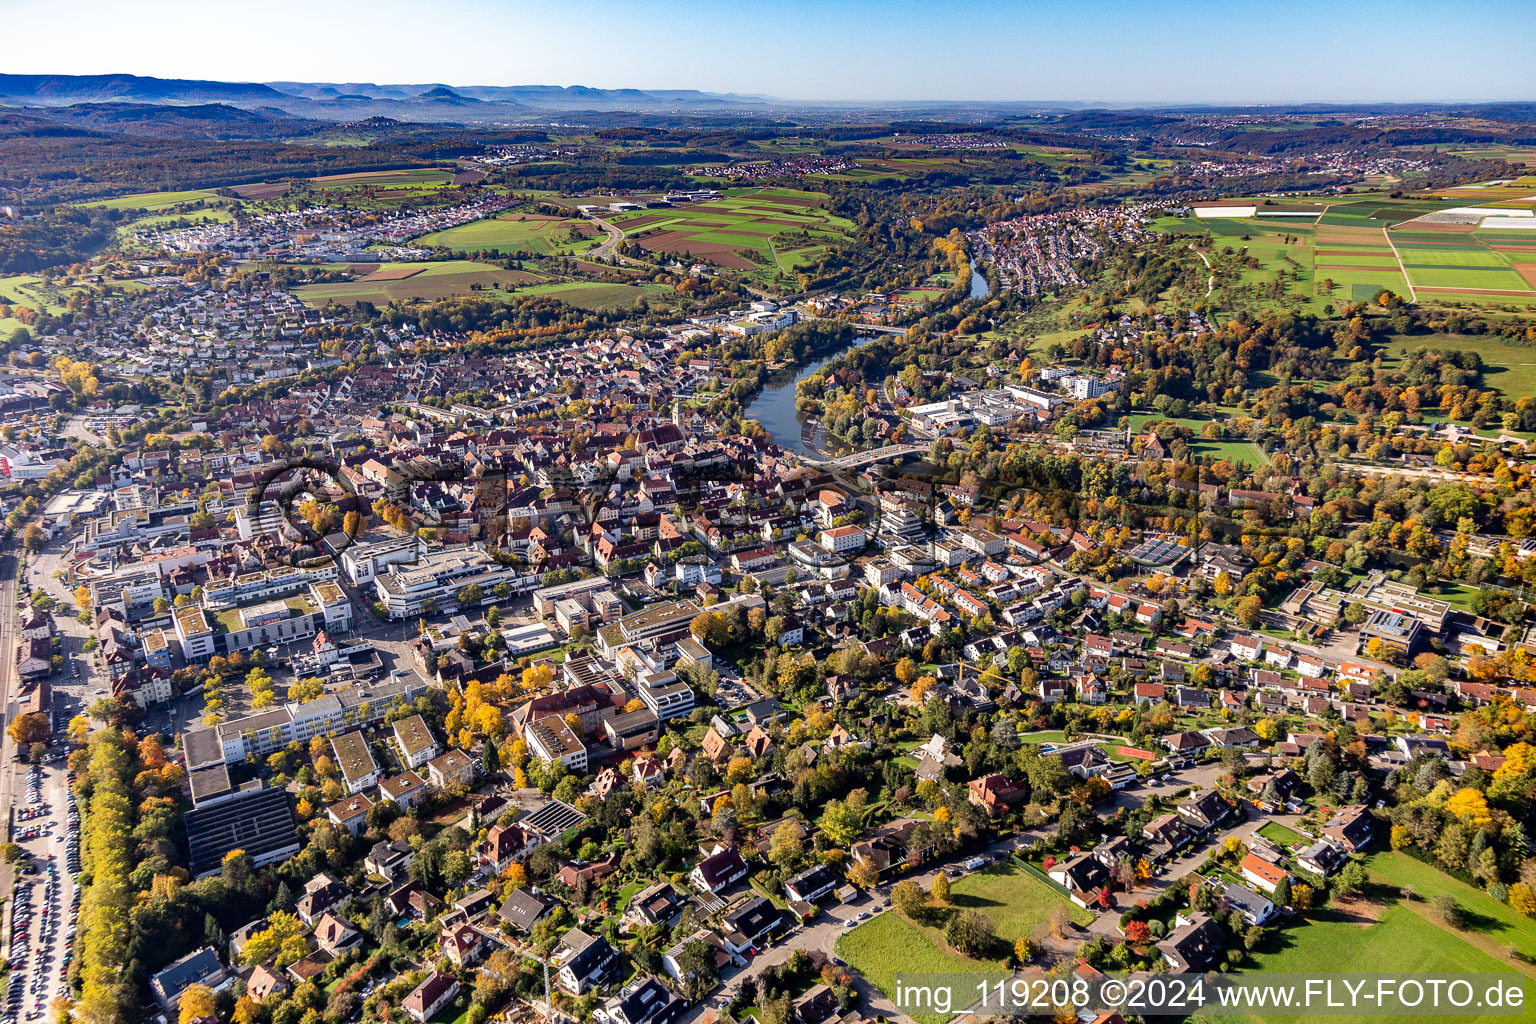 Vue aérienne de Zone riveraine du fleuve Neckar à Nürtingen dans le département Bade-Wurtemberg, Allemagne